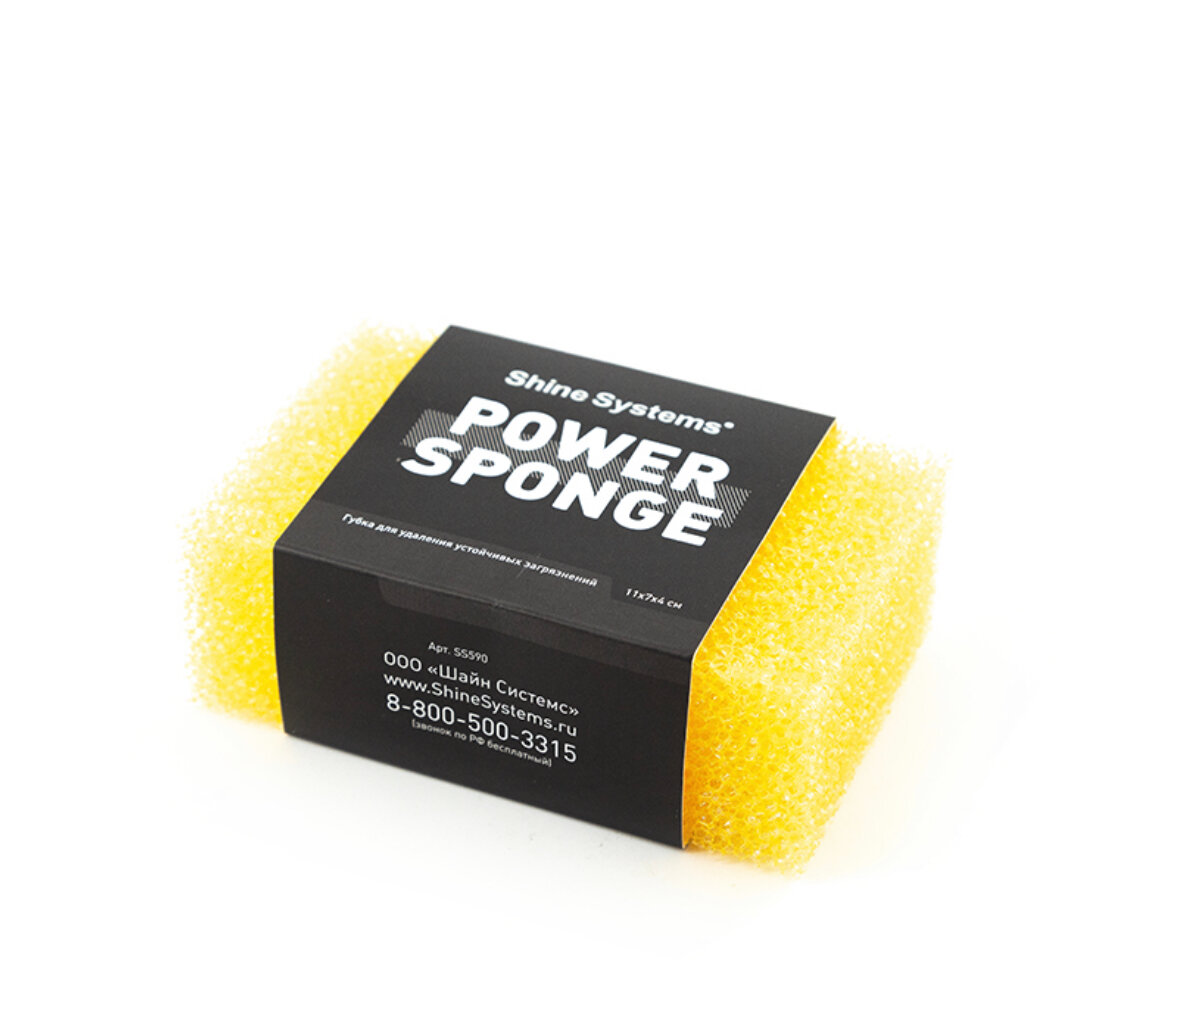 Shine Systems Power Sponge - губка для удаления устойчивых загрязнений